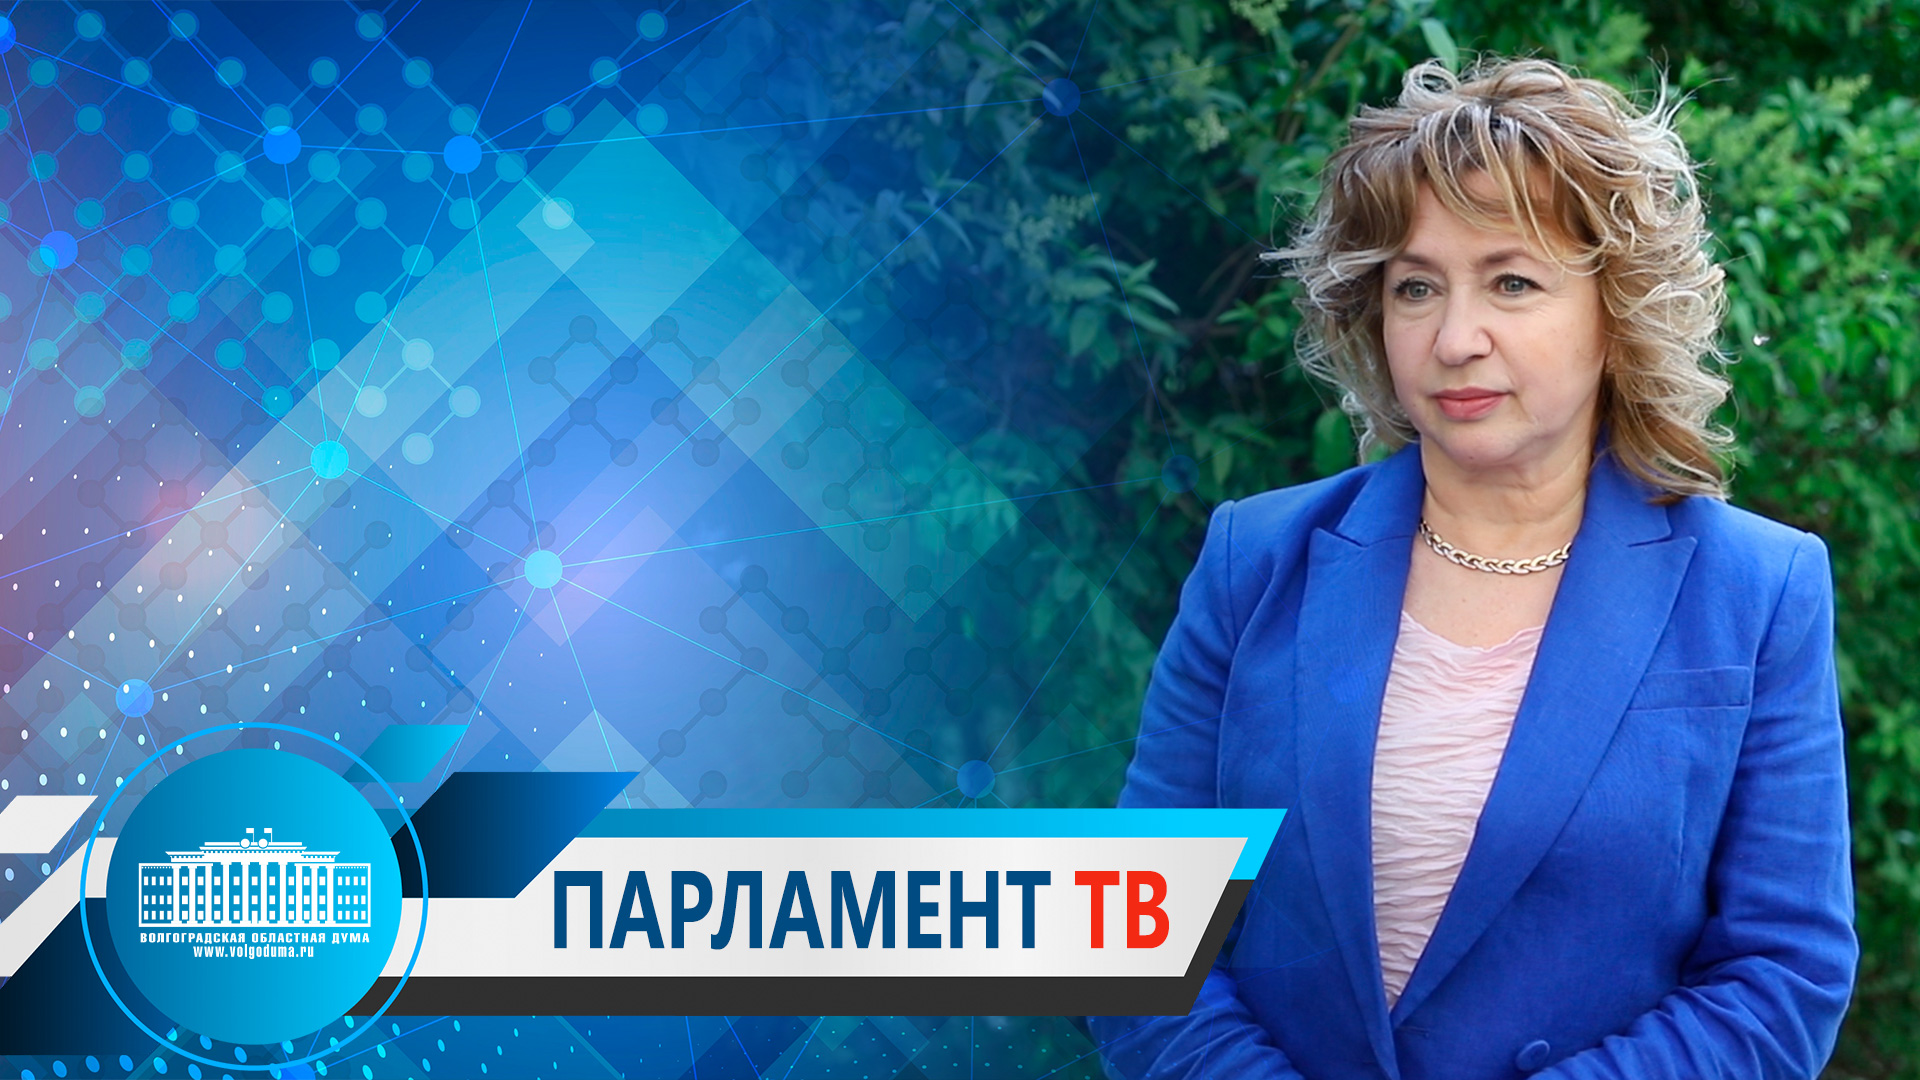 Татьяна Бухтина о едином подходе к обучению руководителей школьных театров